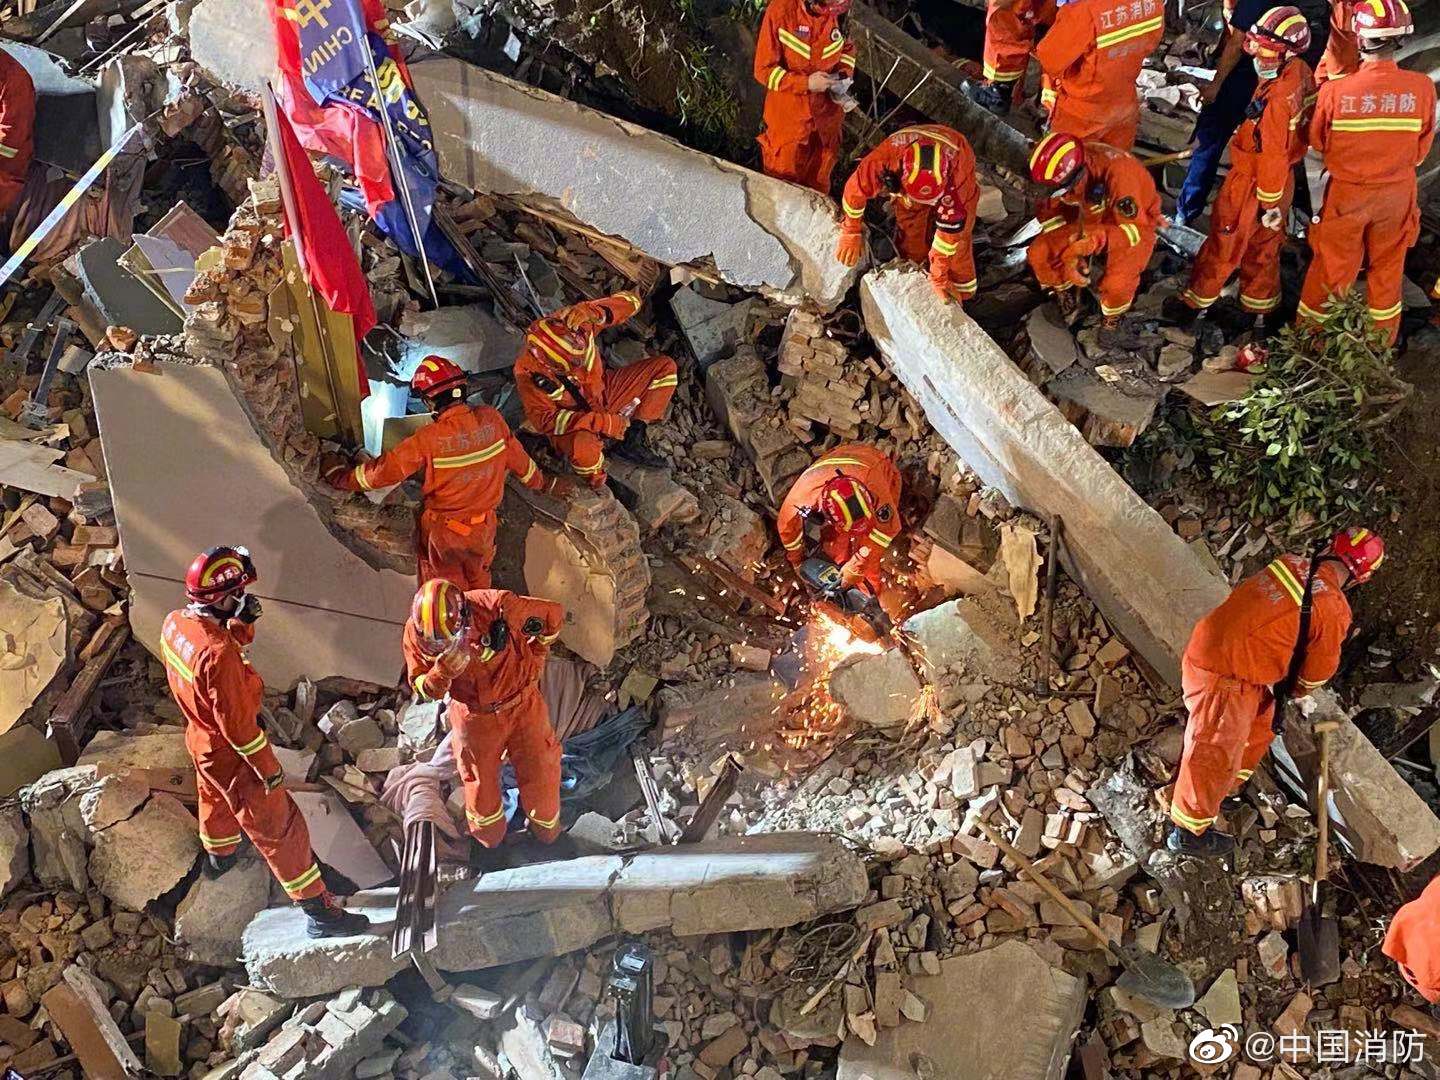 600余名消防指战员正在苏州酒店坍塌事故现场实施救援